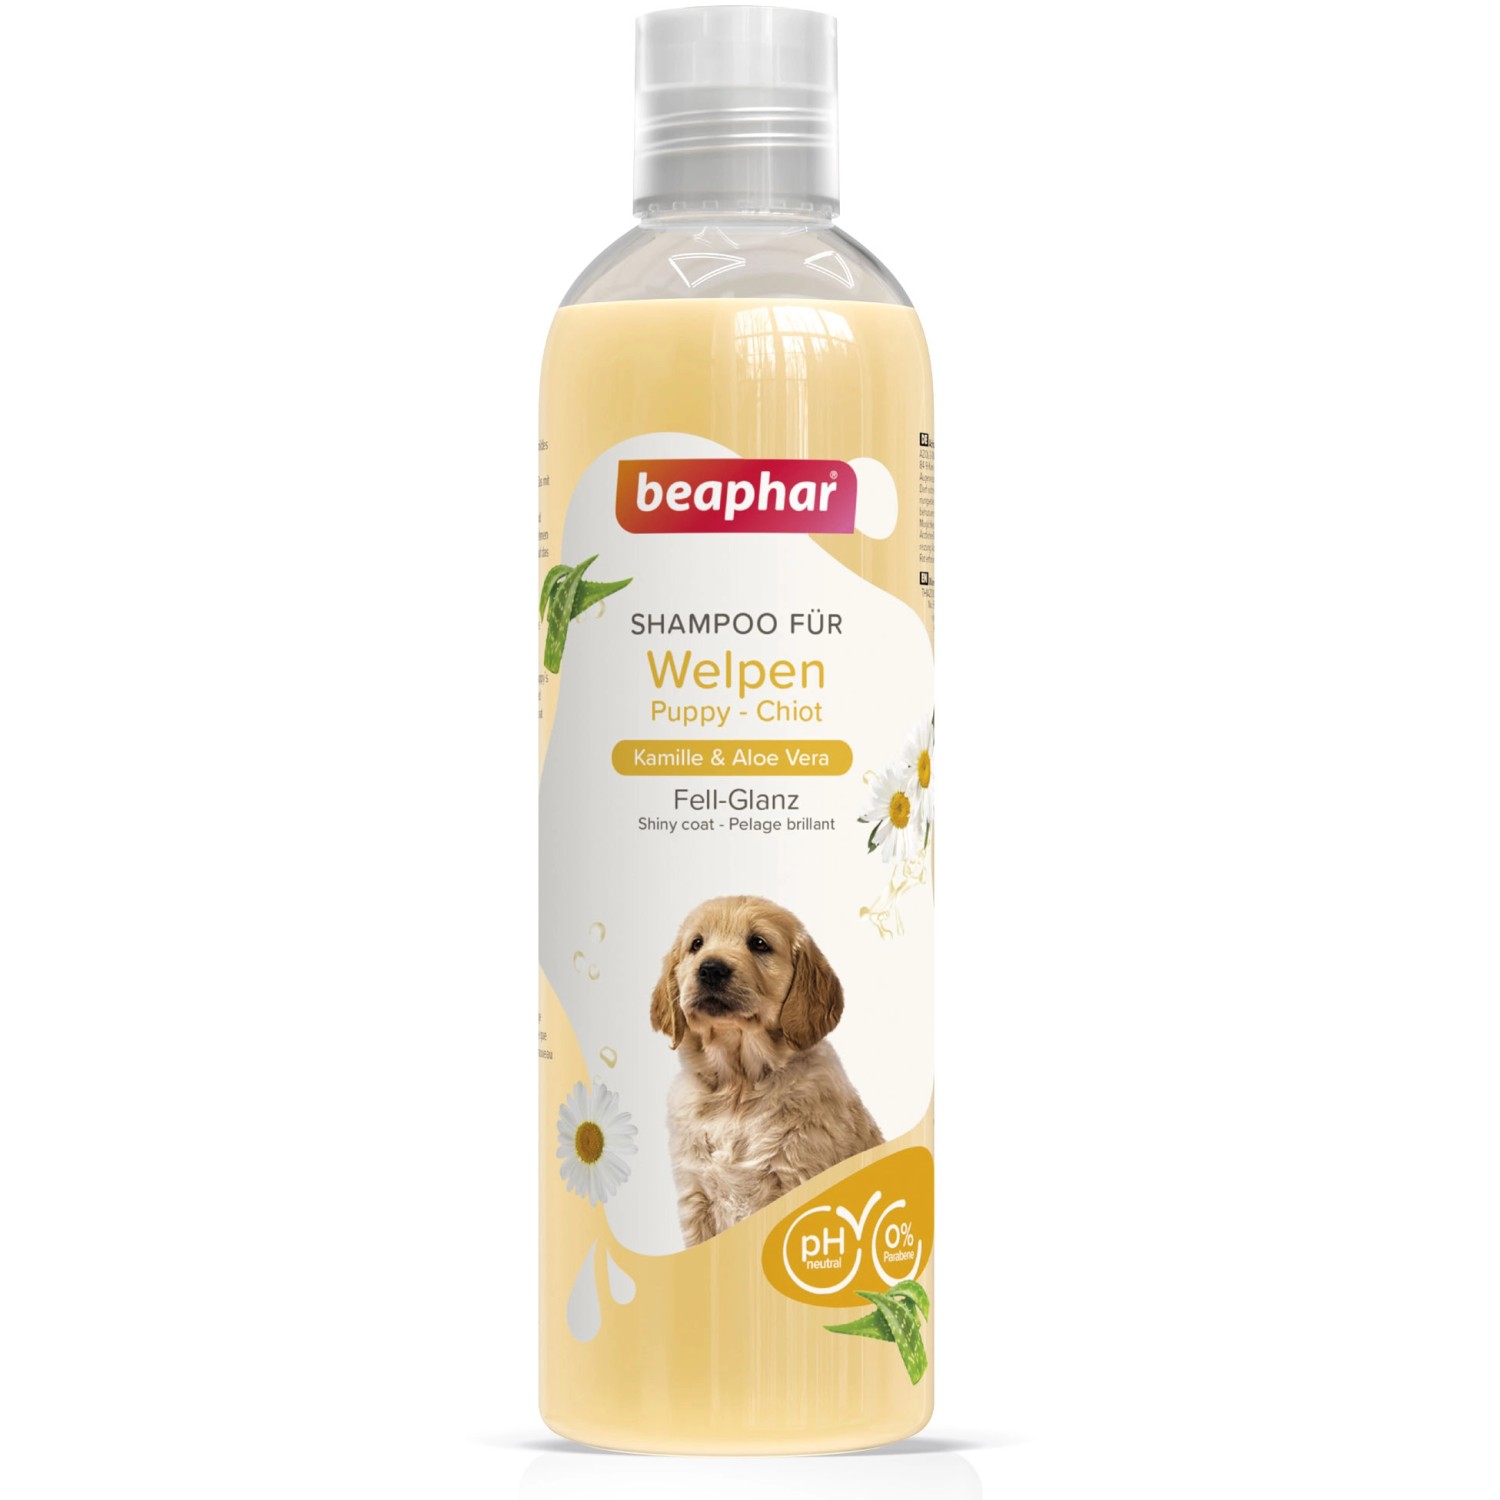 Beaphar Shampoo für Welpen 250 ml